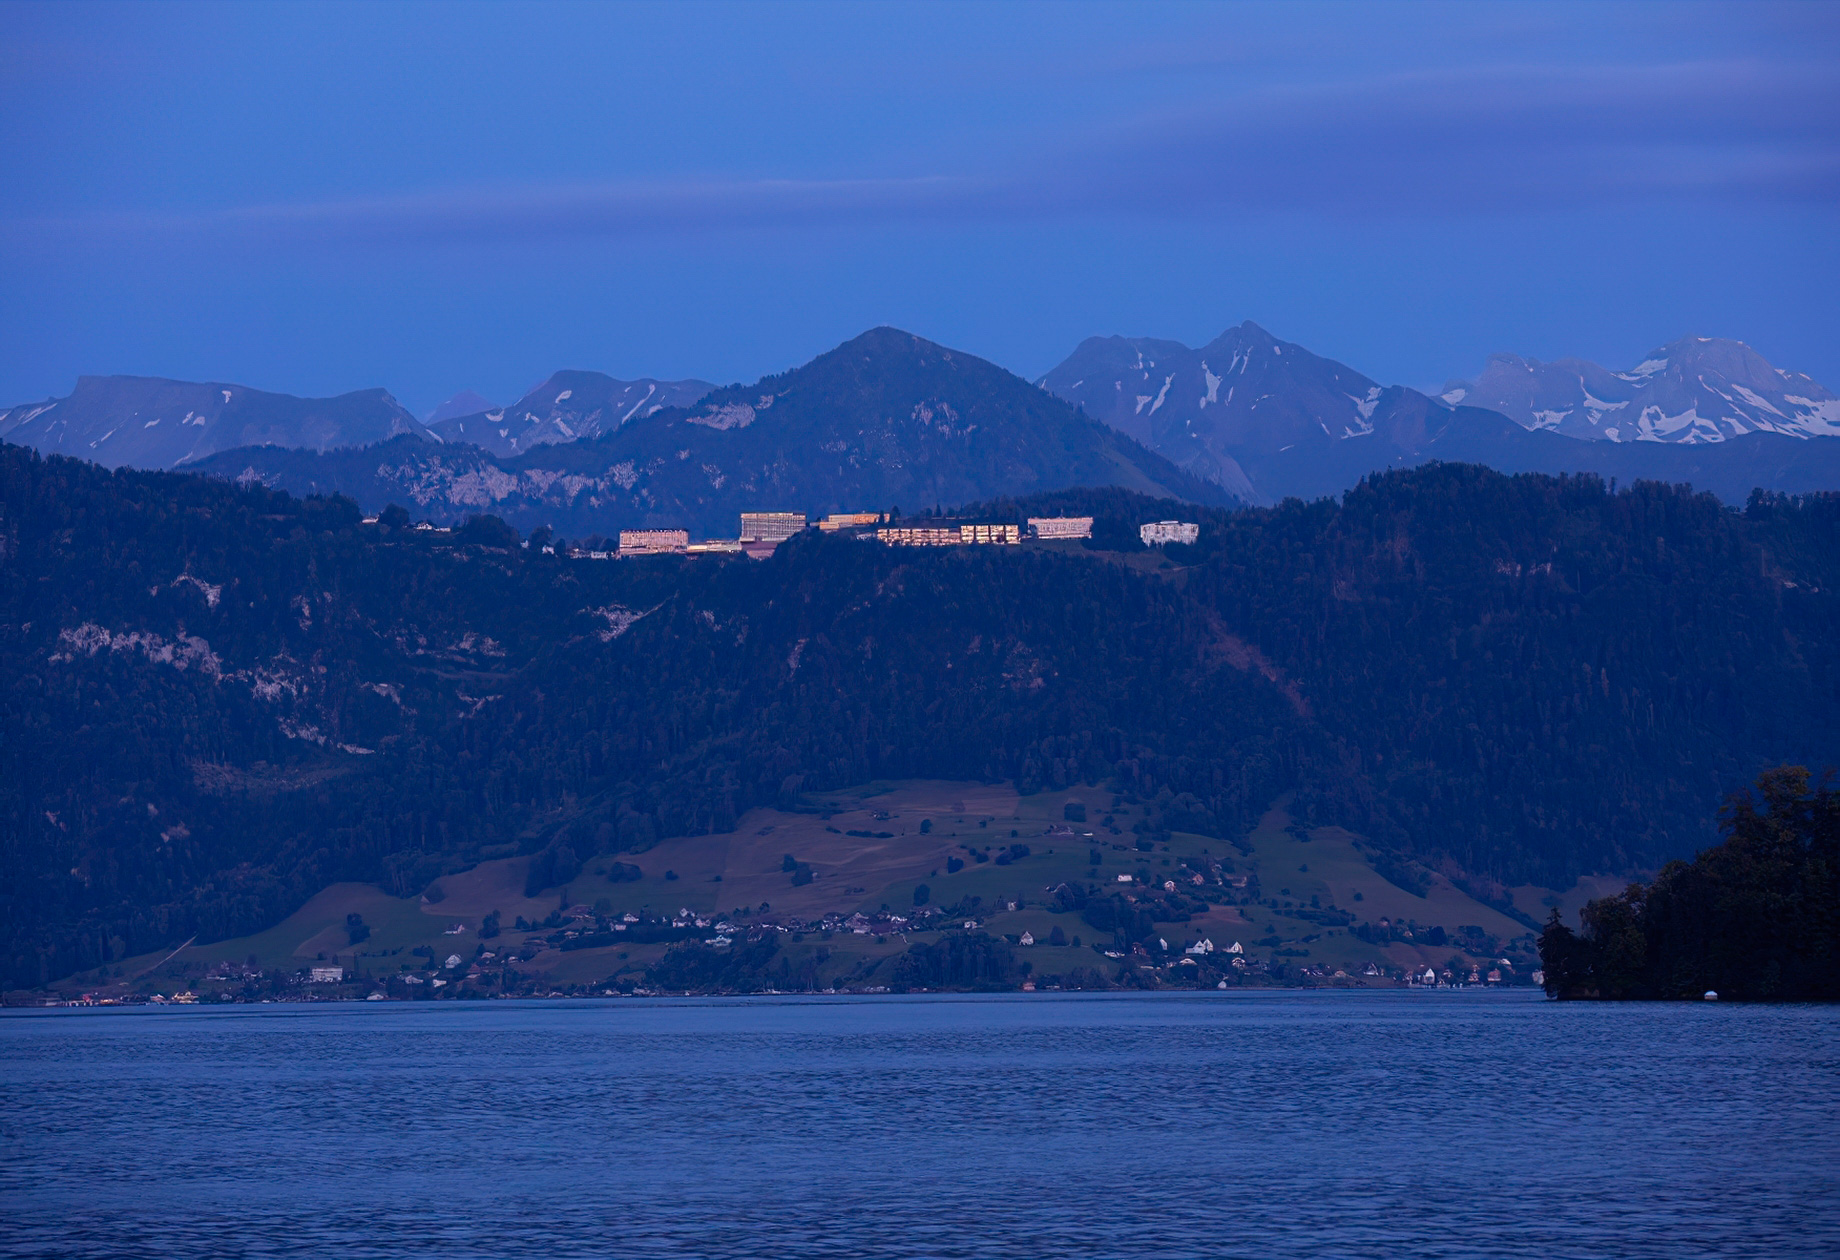 Burgenstock Hotel & Alpine Spa – Obburgen, Switzerland – Buergenstock Resort Lucerne Lake Night View